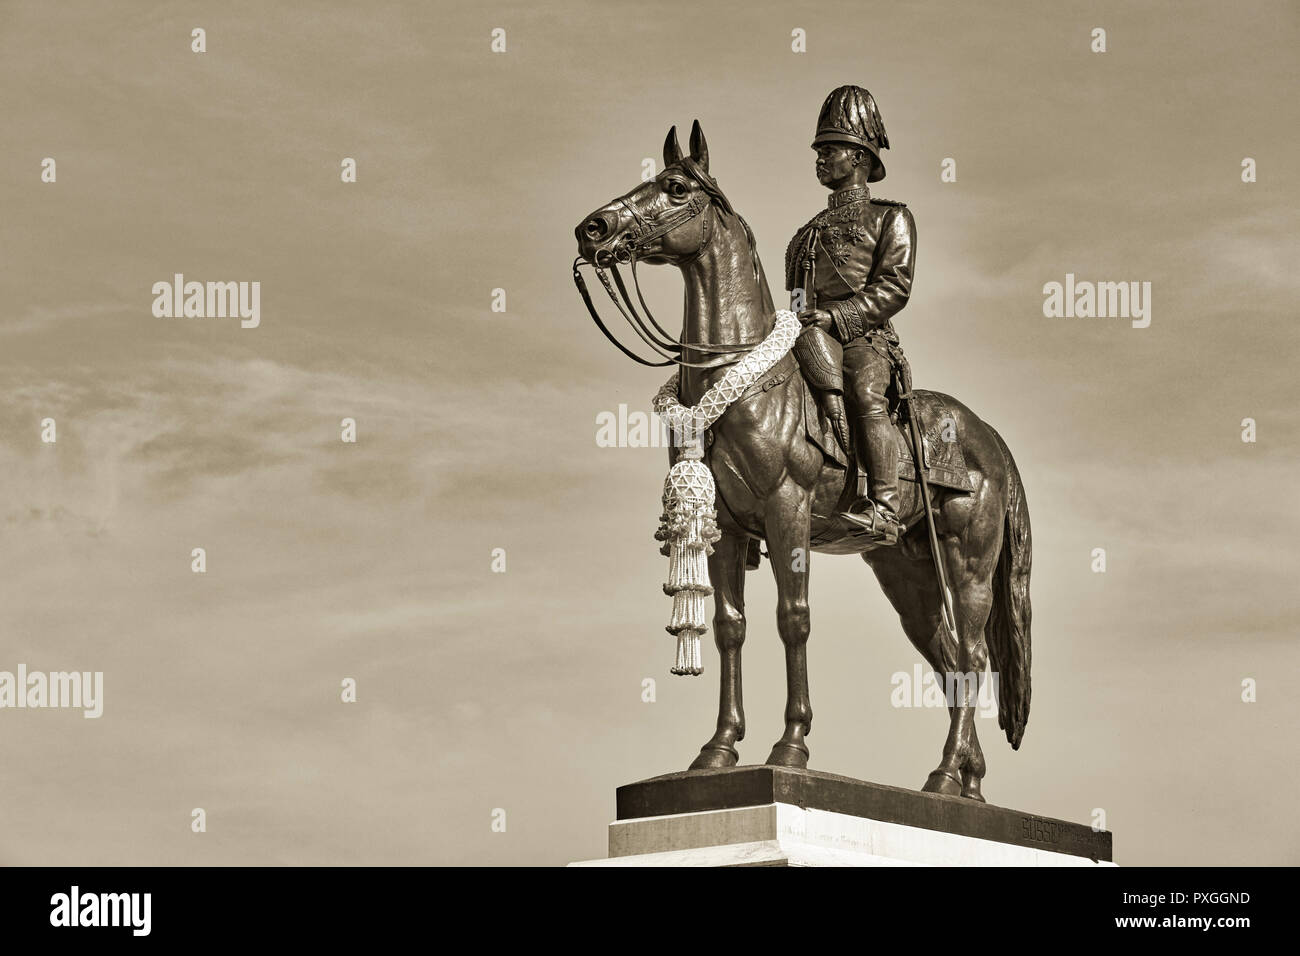 Une statue équestre du roi Chulalongkorn, Rama V, avec vue sur le Grand Plaza Royale en face de la salle du trône Ananta Samakhom à Bangkok, Thaïlande Banque D'Images